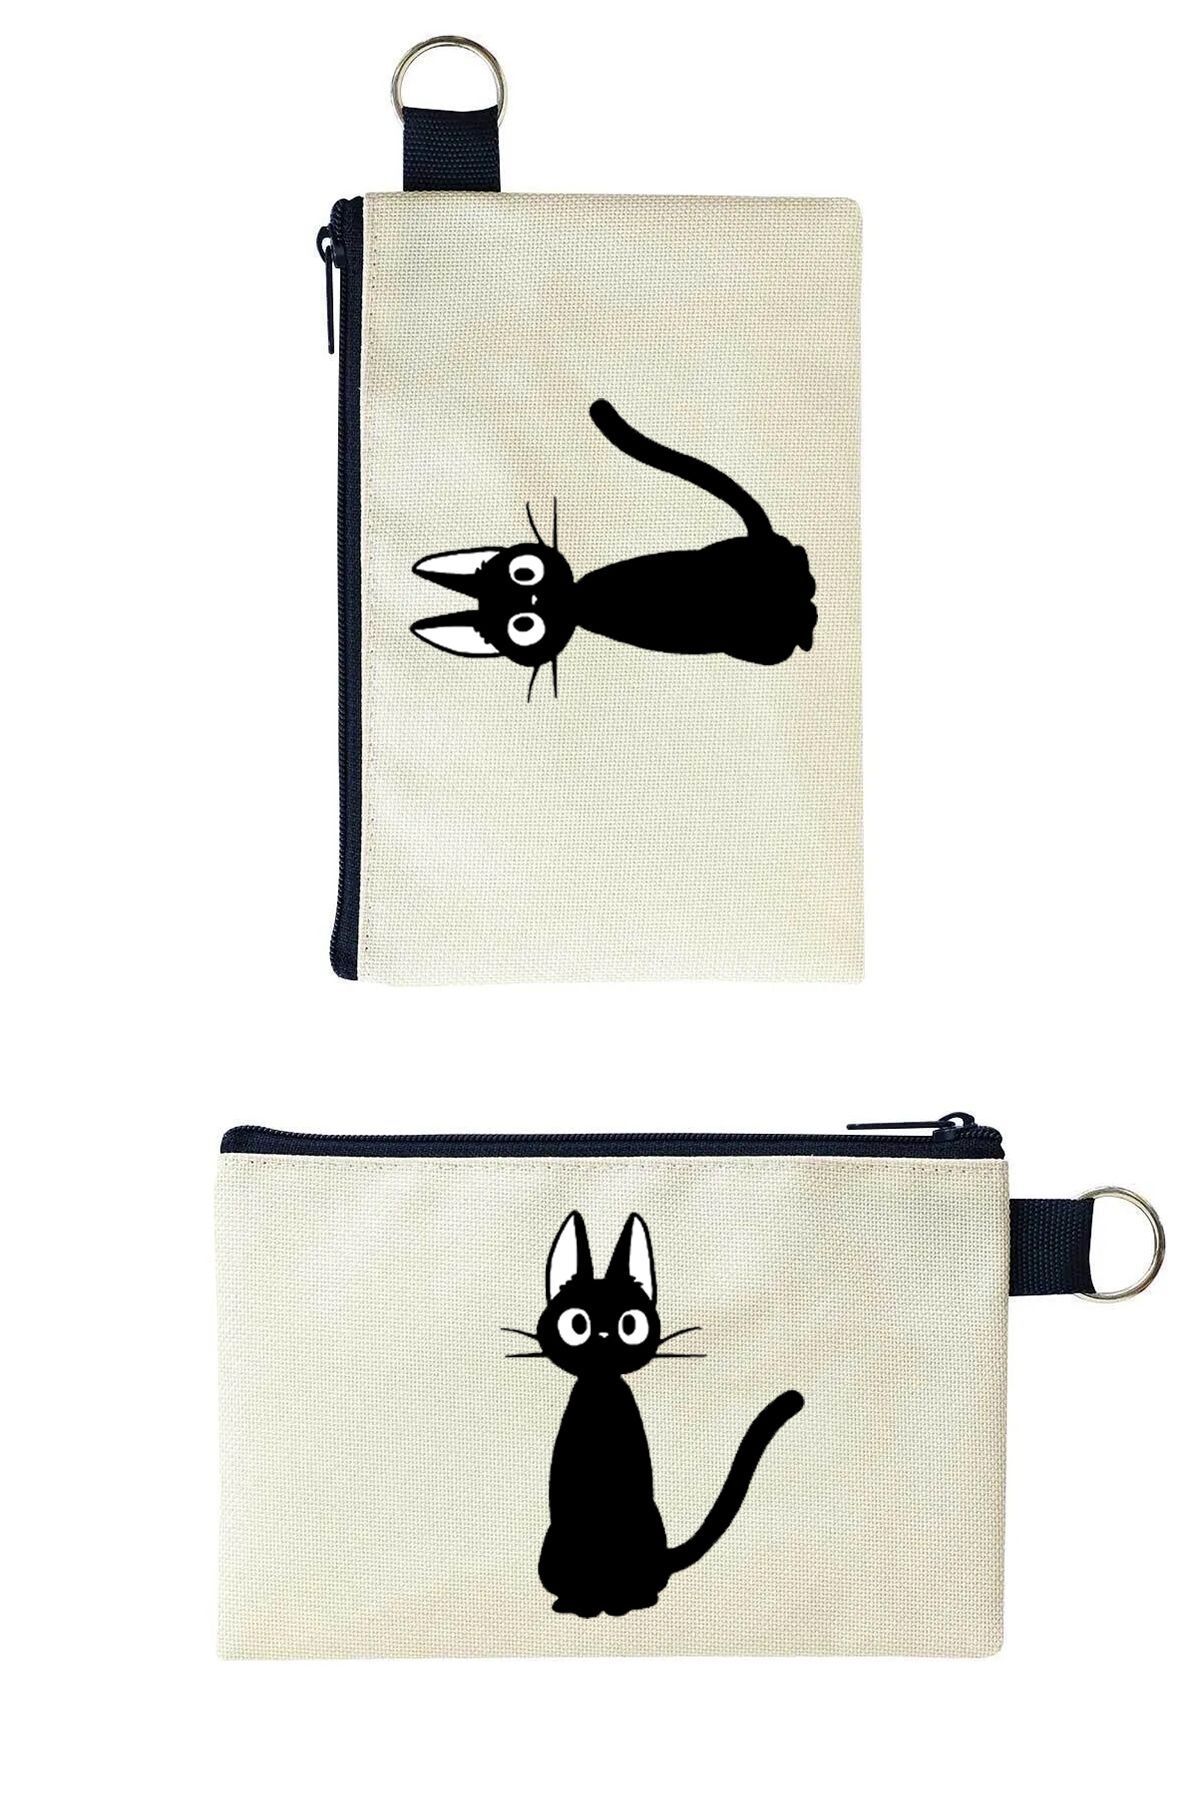 Woys Bags Siyah Kedi Baskılı Kanvas Makyaj Çantası